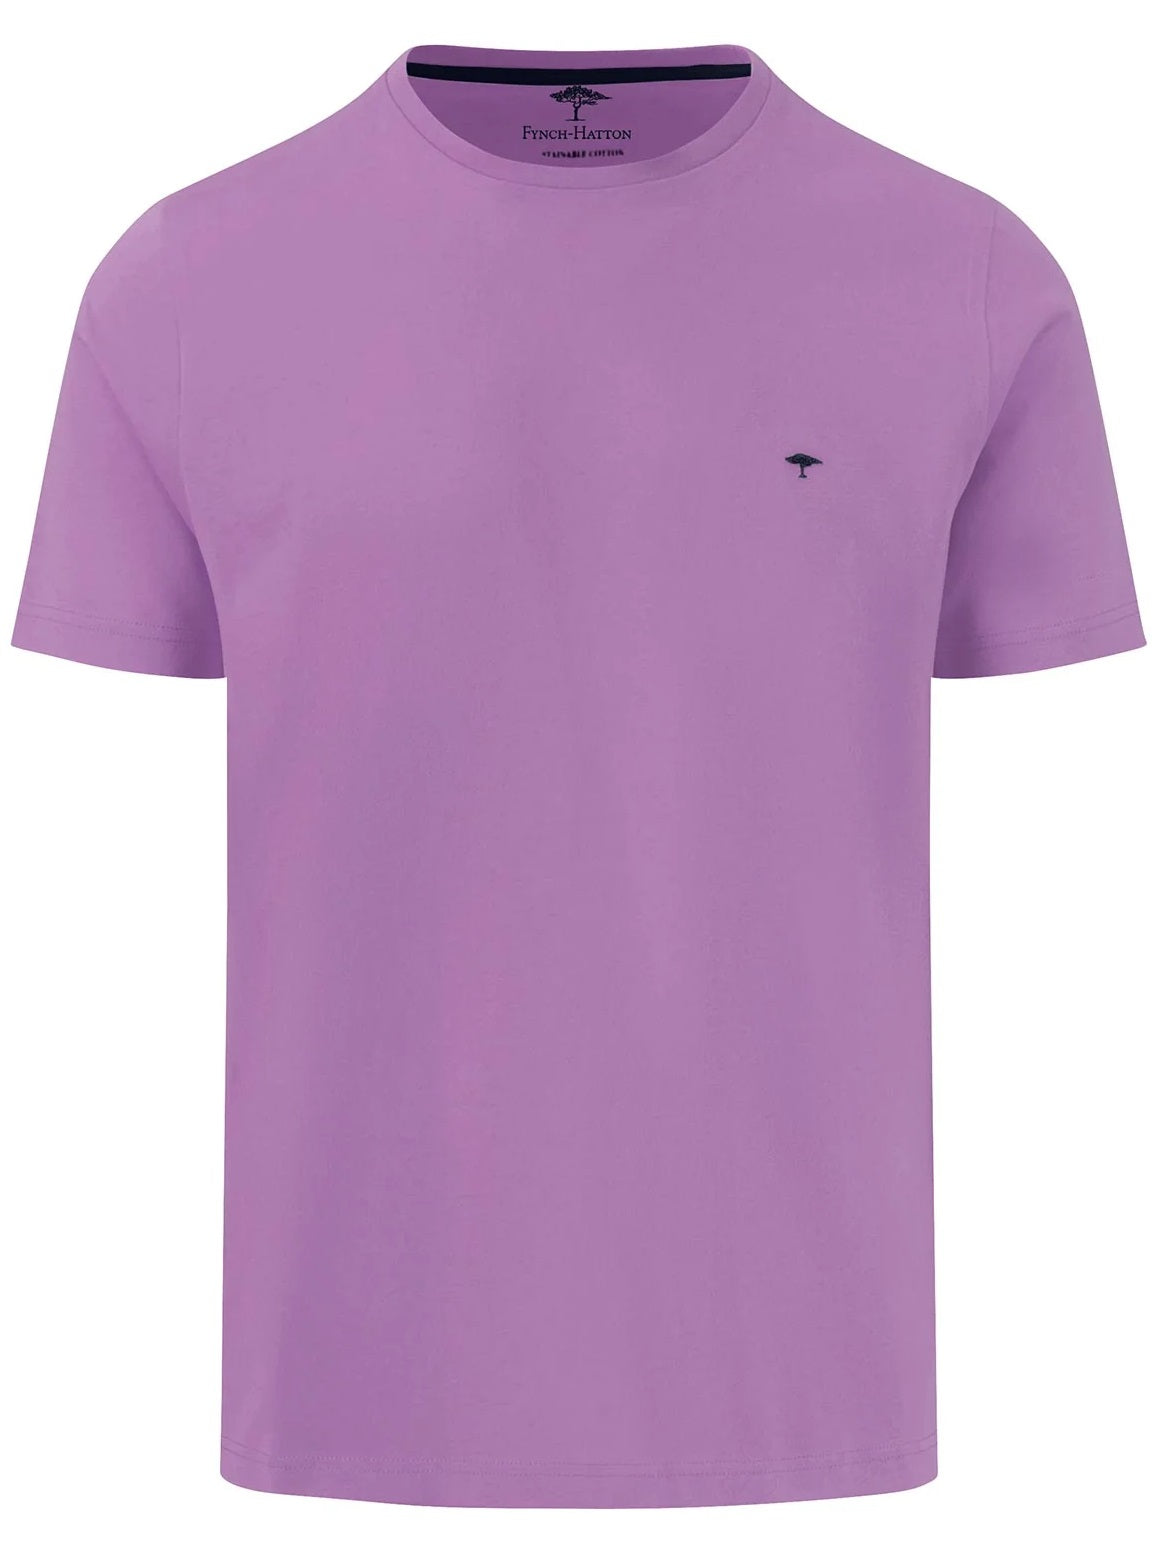 FYNCH HATTON T-Shirt - Men's Round Neck – Dusty Lavender